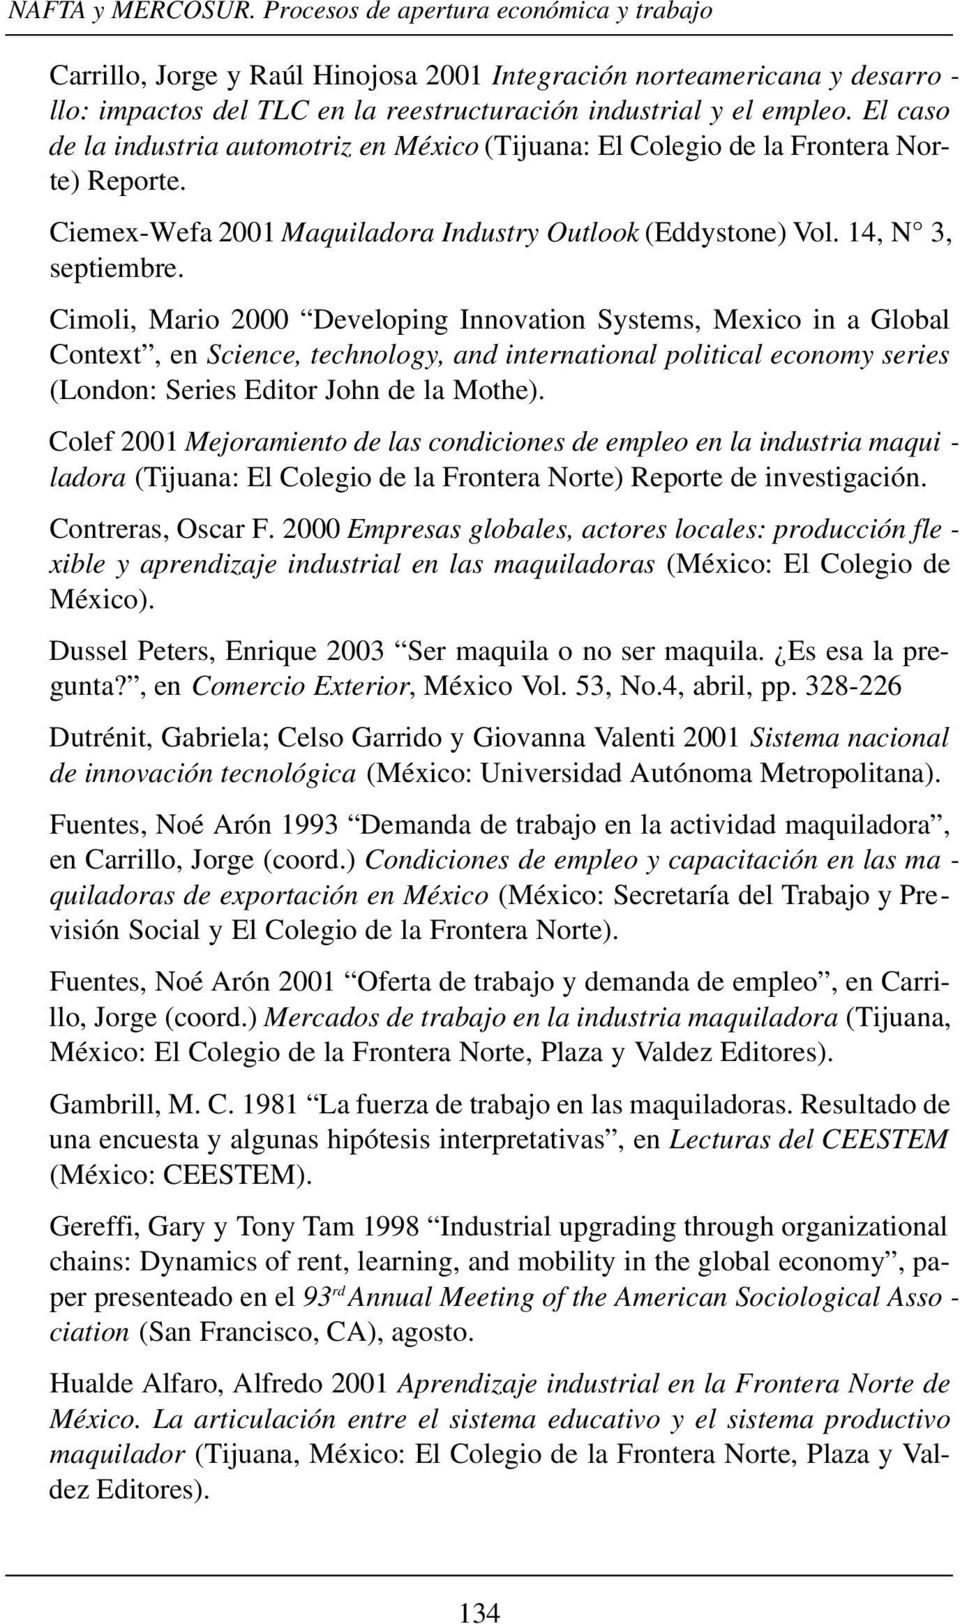 El caso de la industria automotriz en México (Tijuana: El Colegio de la Frontera Norte) Reporte. Ciemex-Wefa 2001 Maquiladora Industry Outlook (Eddystone) Vol. 14, N 3, septiembre.